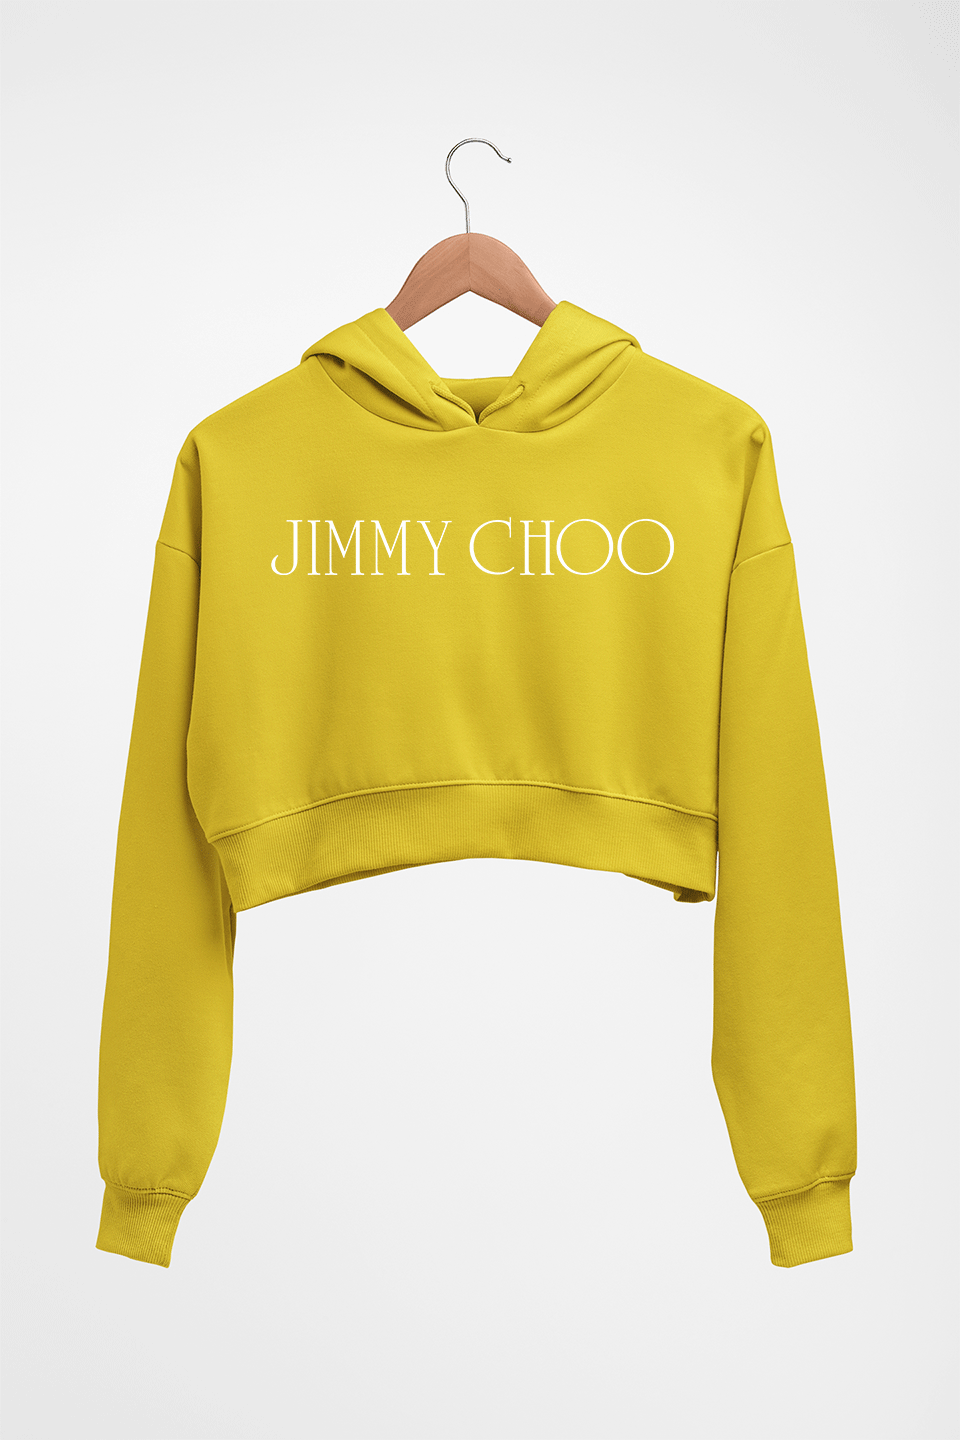 Jimmy Choo Crop HOODIE FOR WOMEN